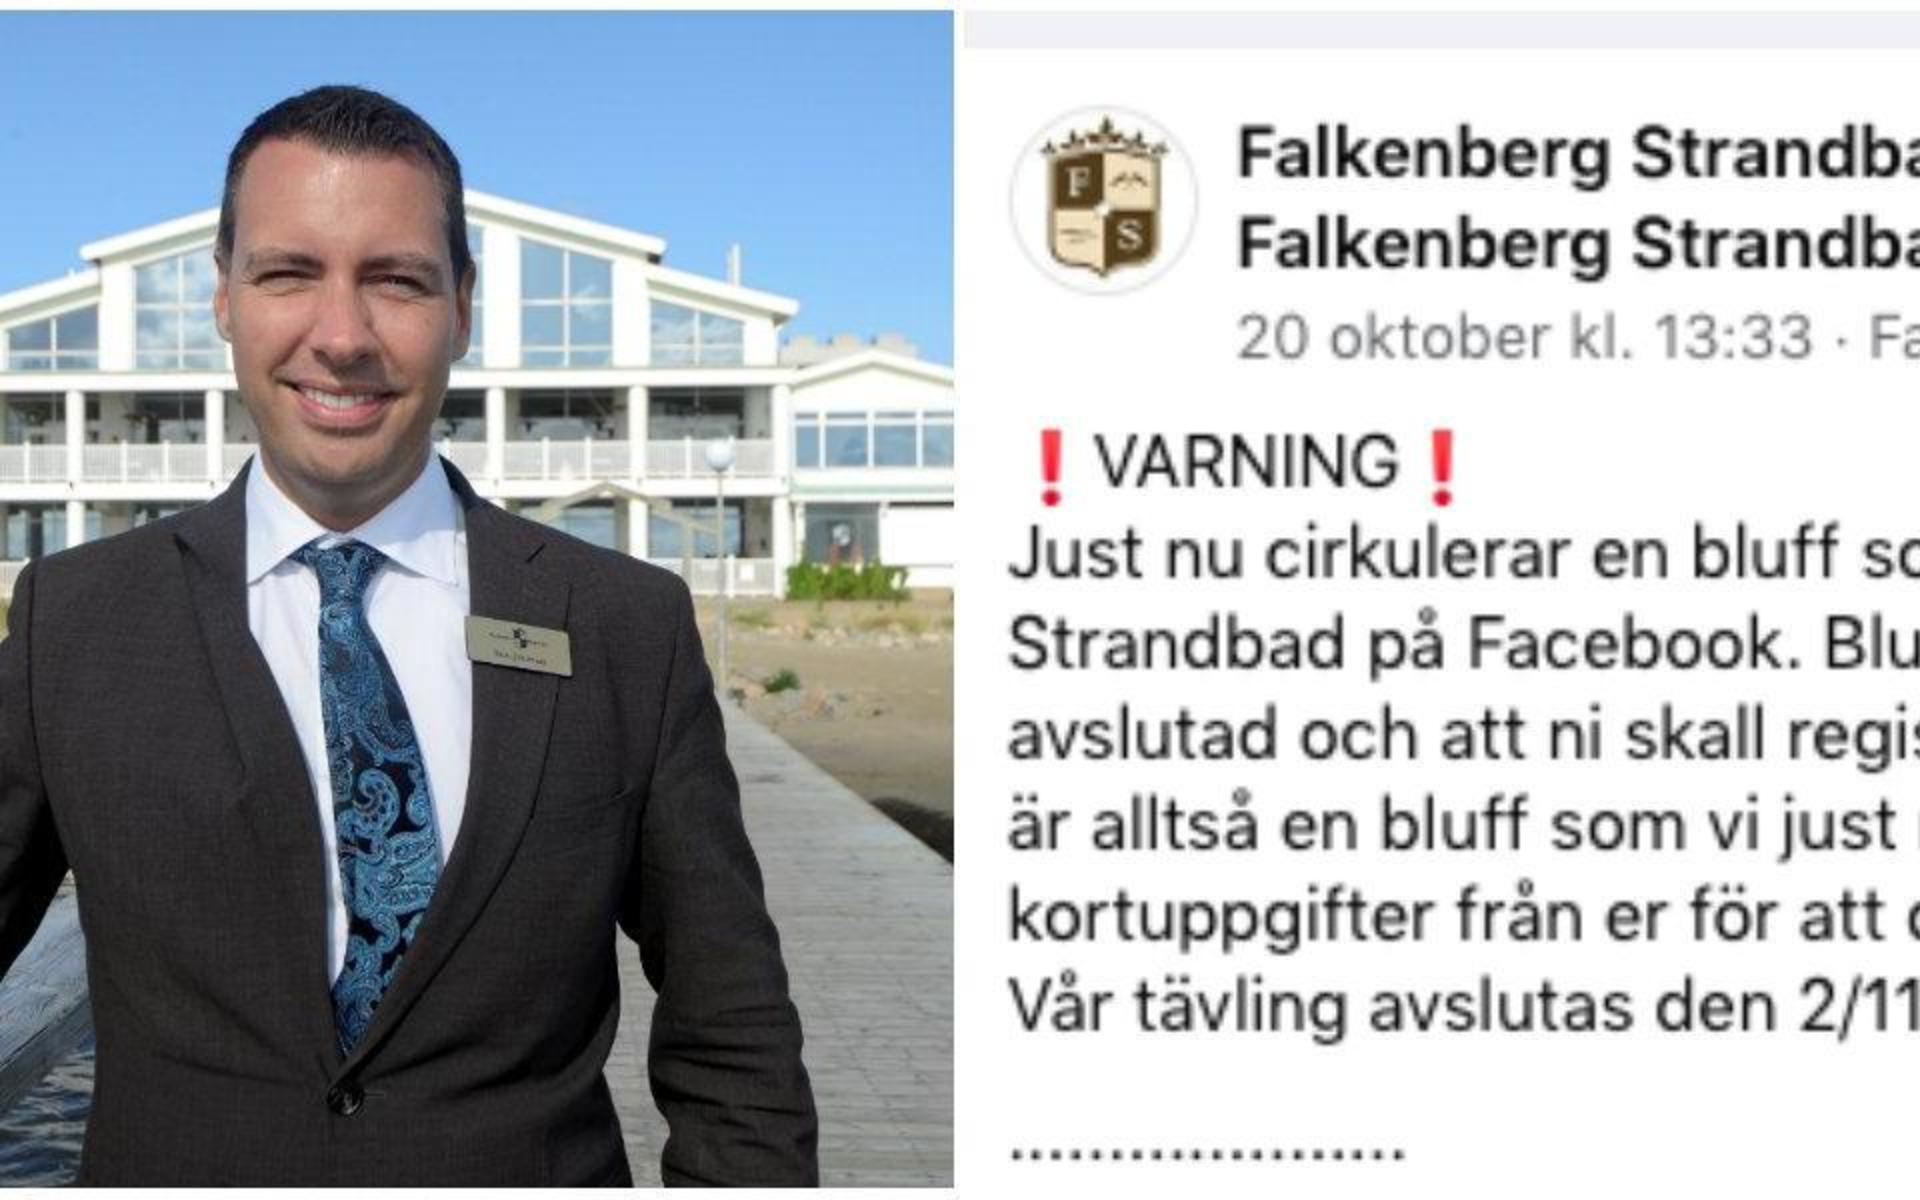 Falkenberg Strandbad har blivit utsatt för en bluff i samband med en tävling på facebook.